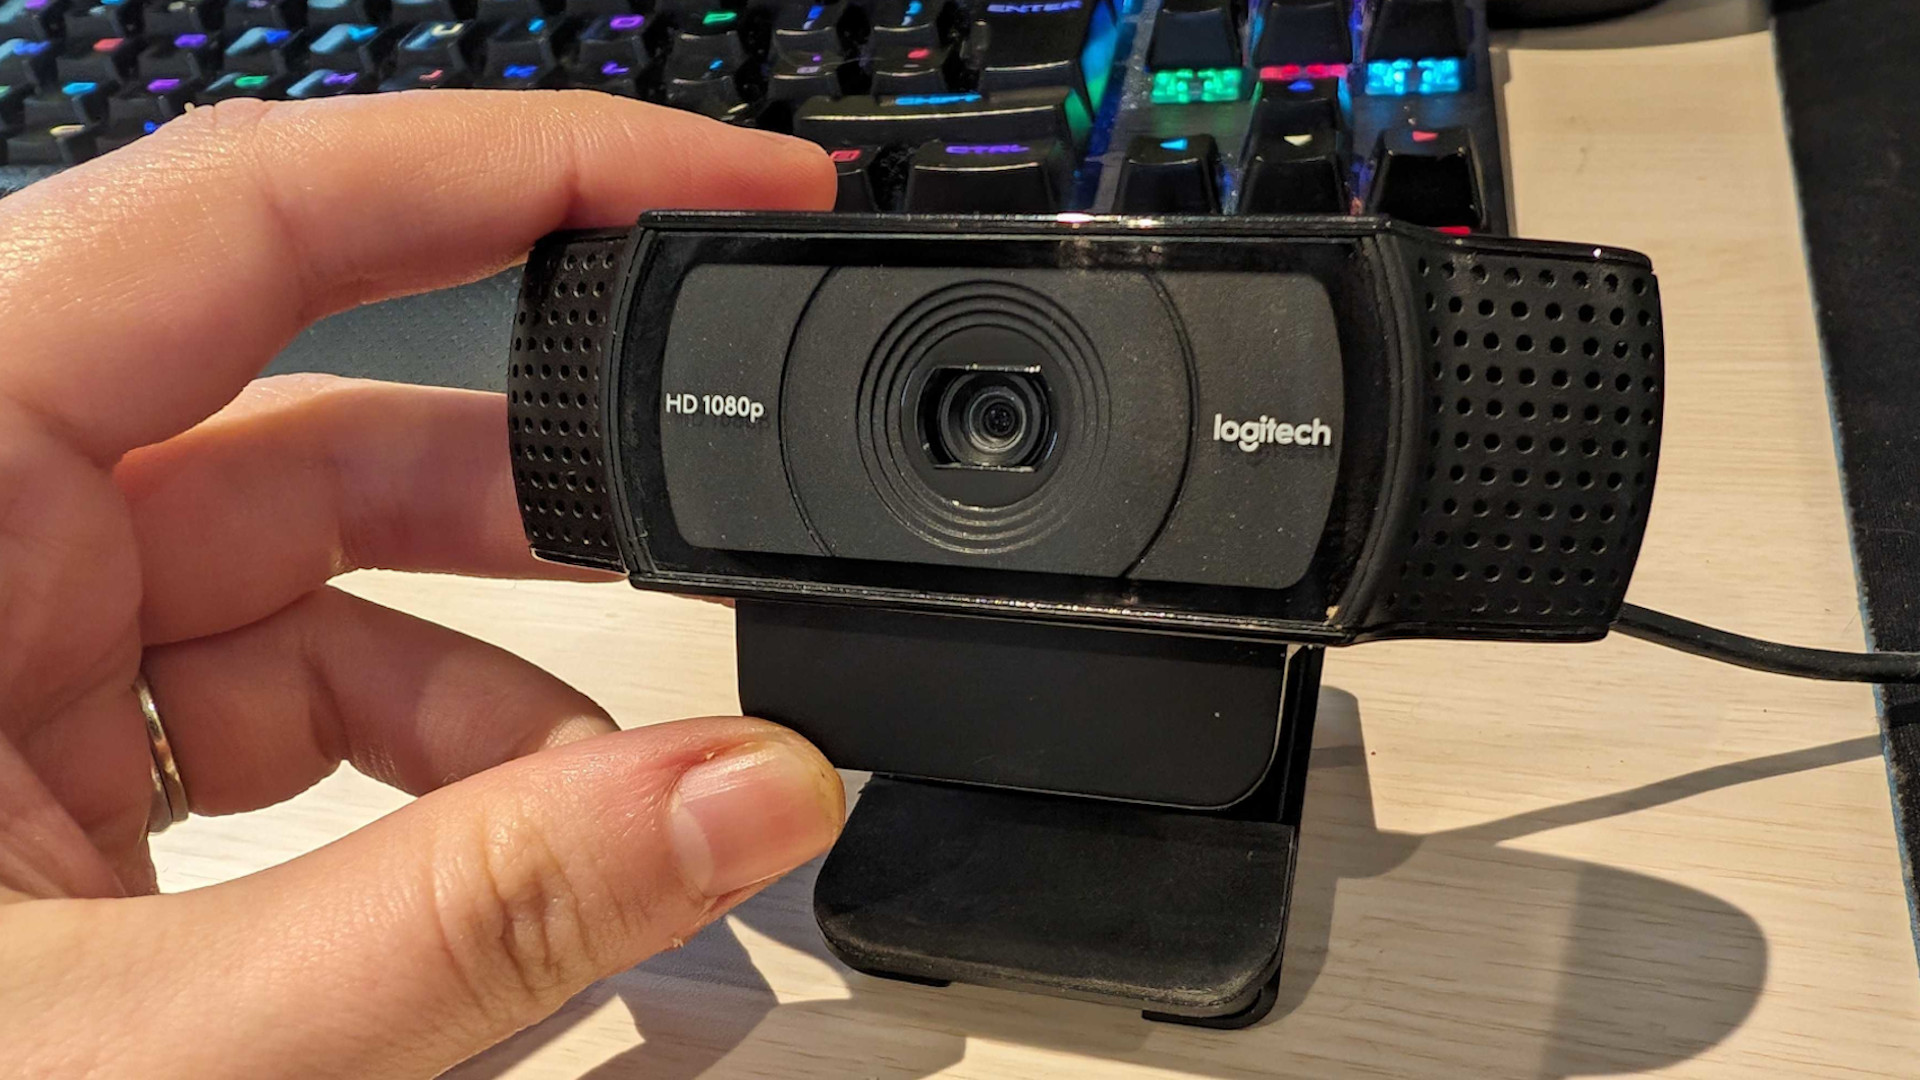 How to Setup a Logitech c920 Webcam 